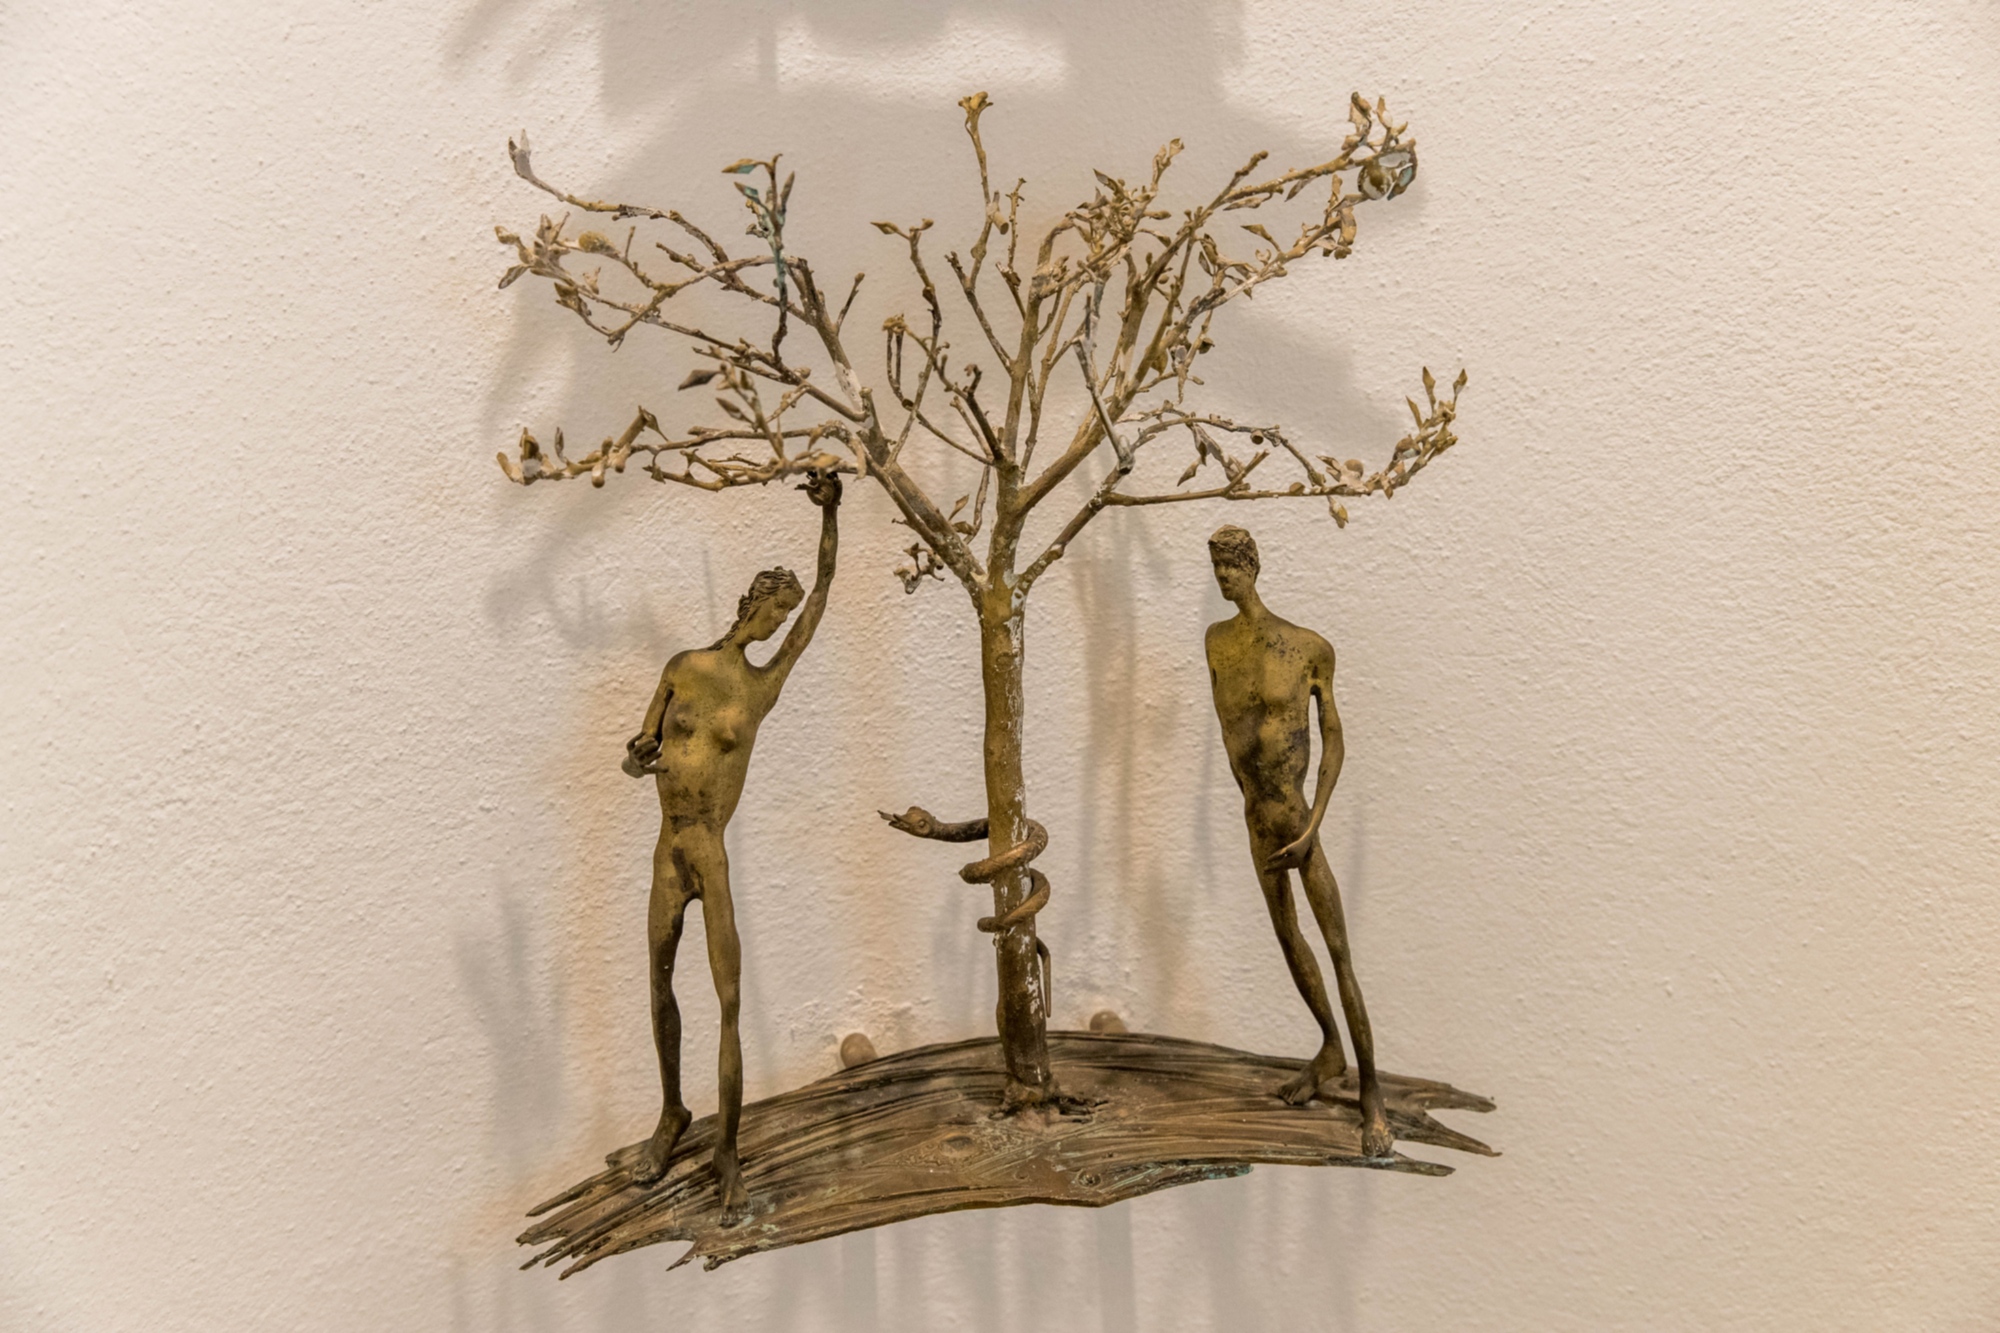 Adamo ed Eva, scultura di Cecco Bonanotte al Battistero di Vinci